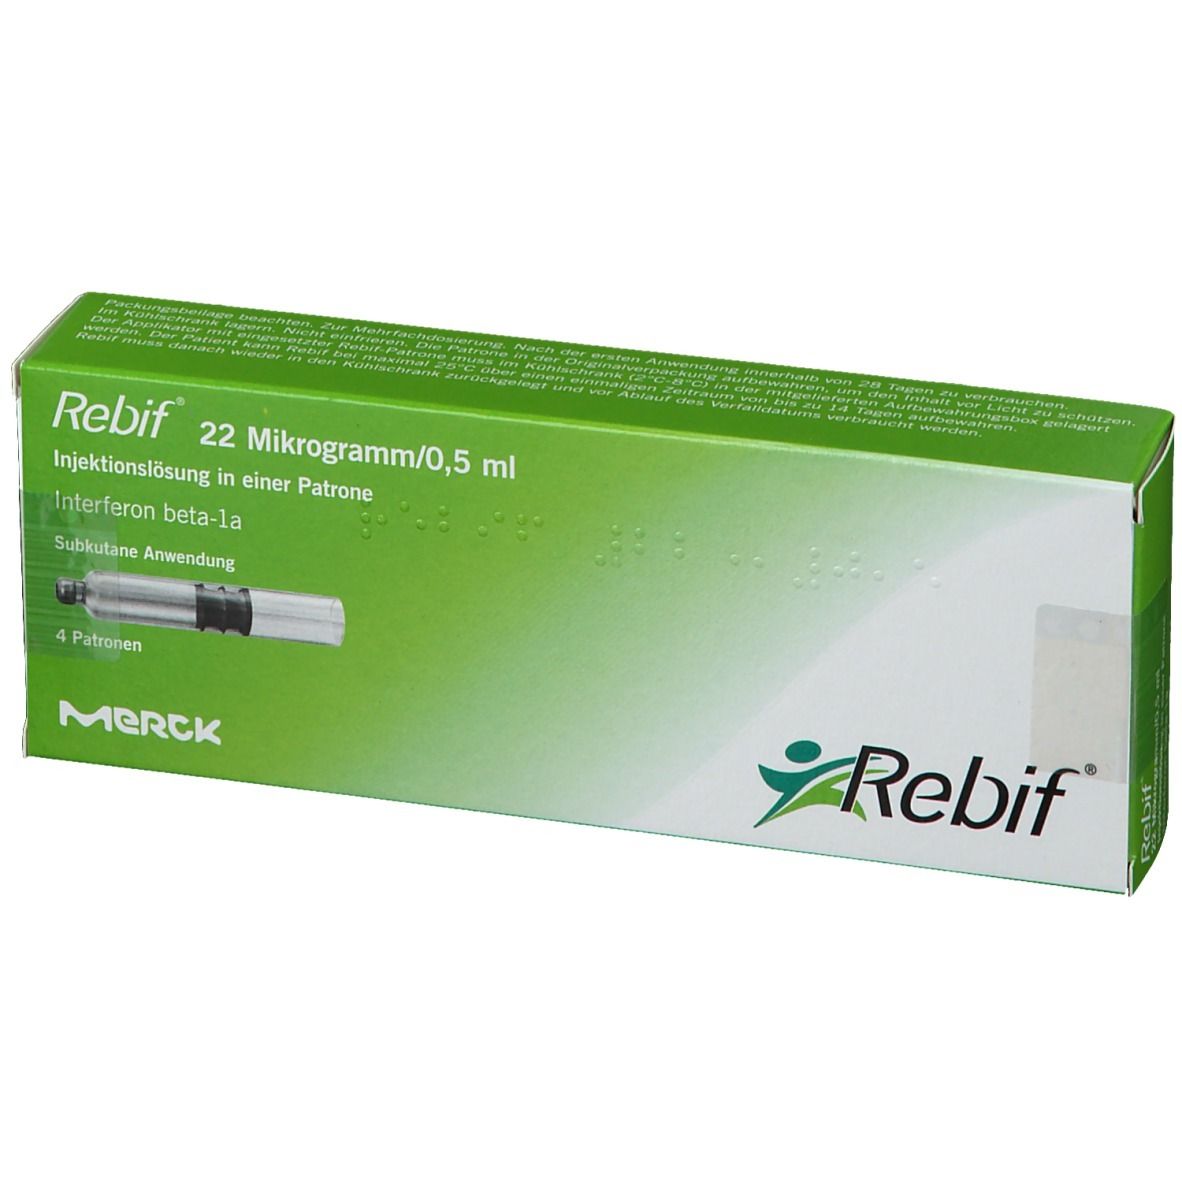 Rebif® 22 µg/0,5 ml